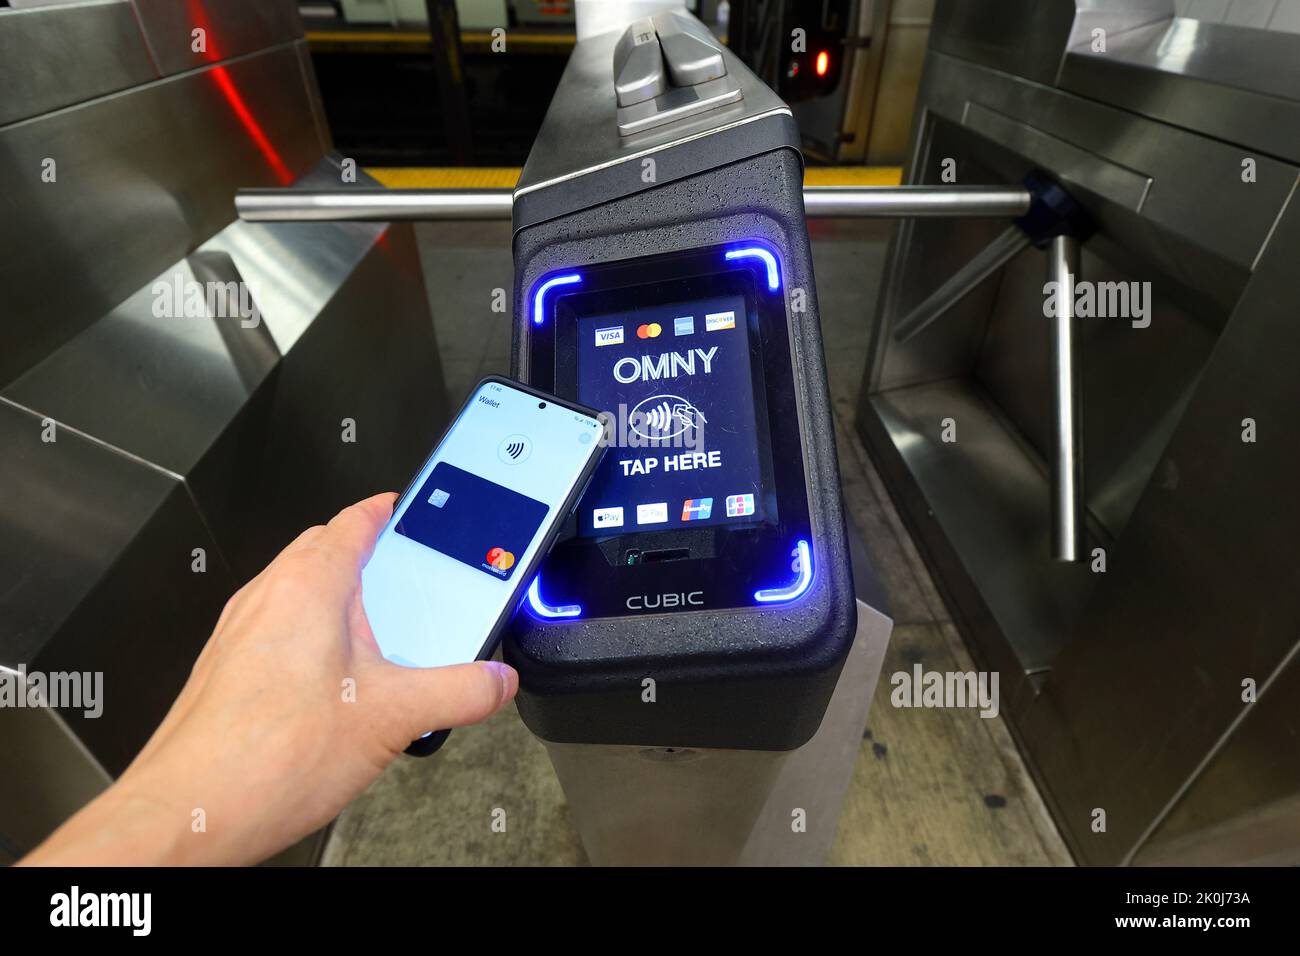 Un smartphone con Google Wallet toca un torniquete de metro de Nueva York equipado con un lector de pagos sin contacto OMNY que acepta pagos NFC Foto de stock